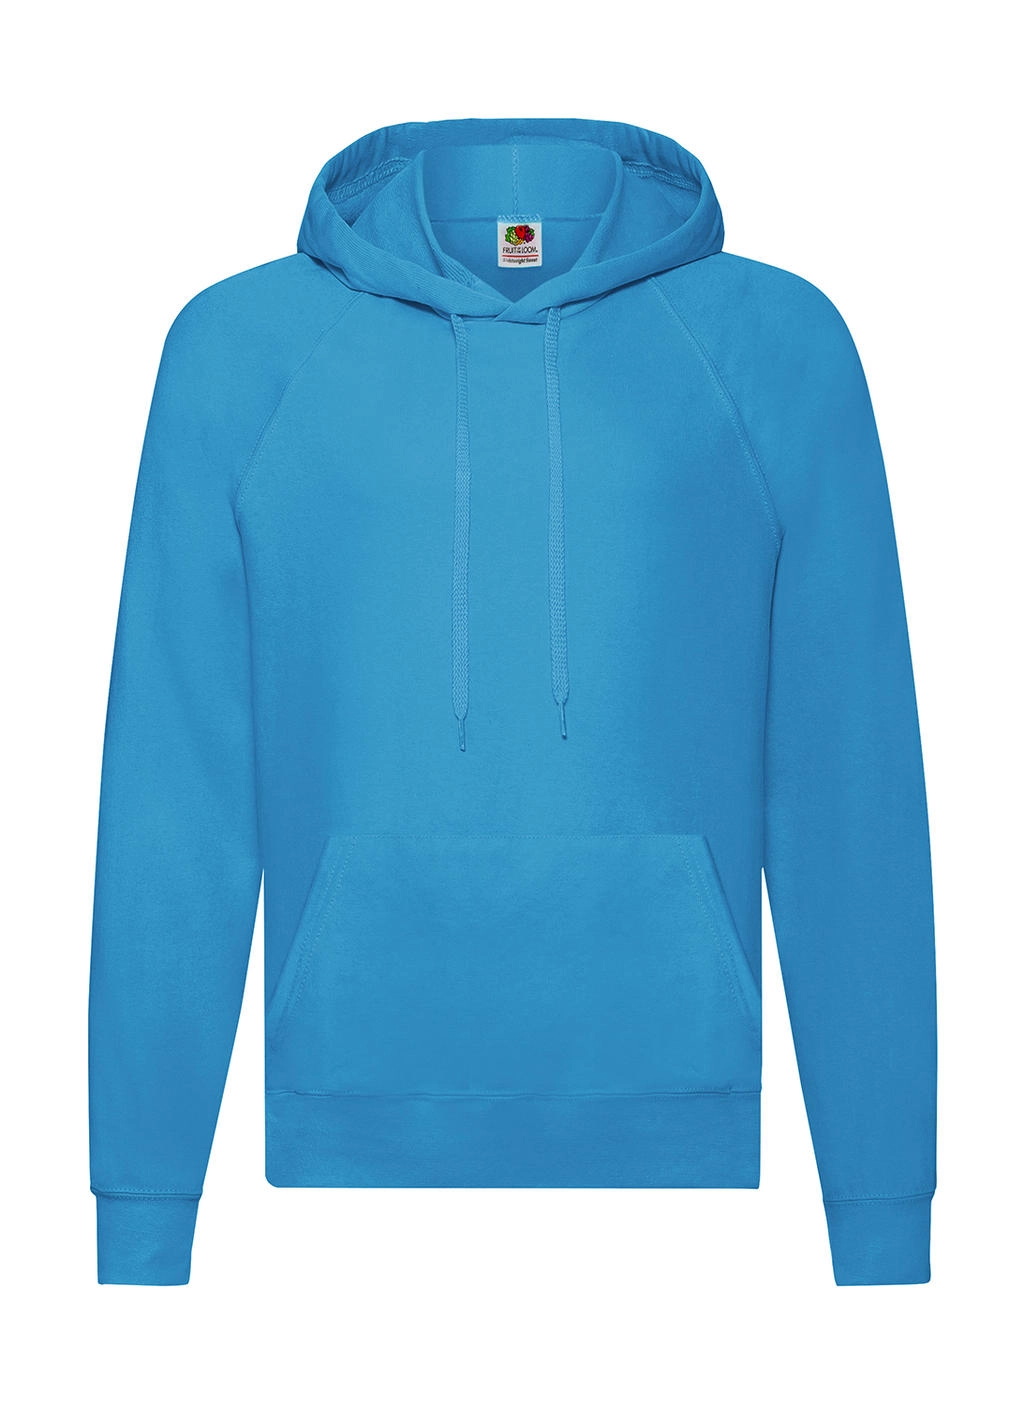 Lightweight Hooded Sweat zum Besticken und Bedrucken in der Farbe Azure Blue mit Ihren Logo, Schriftzug oder Motiv.